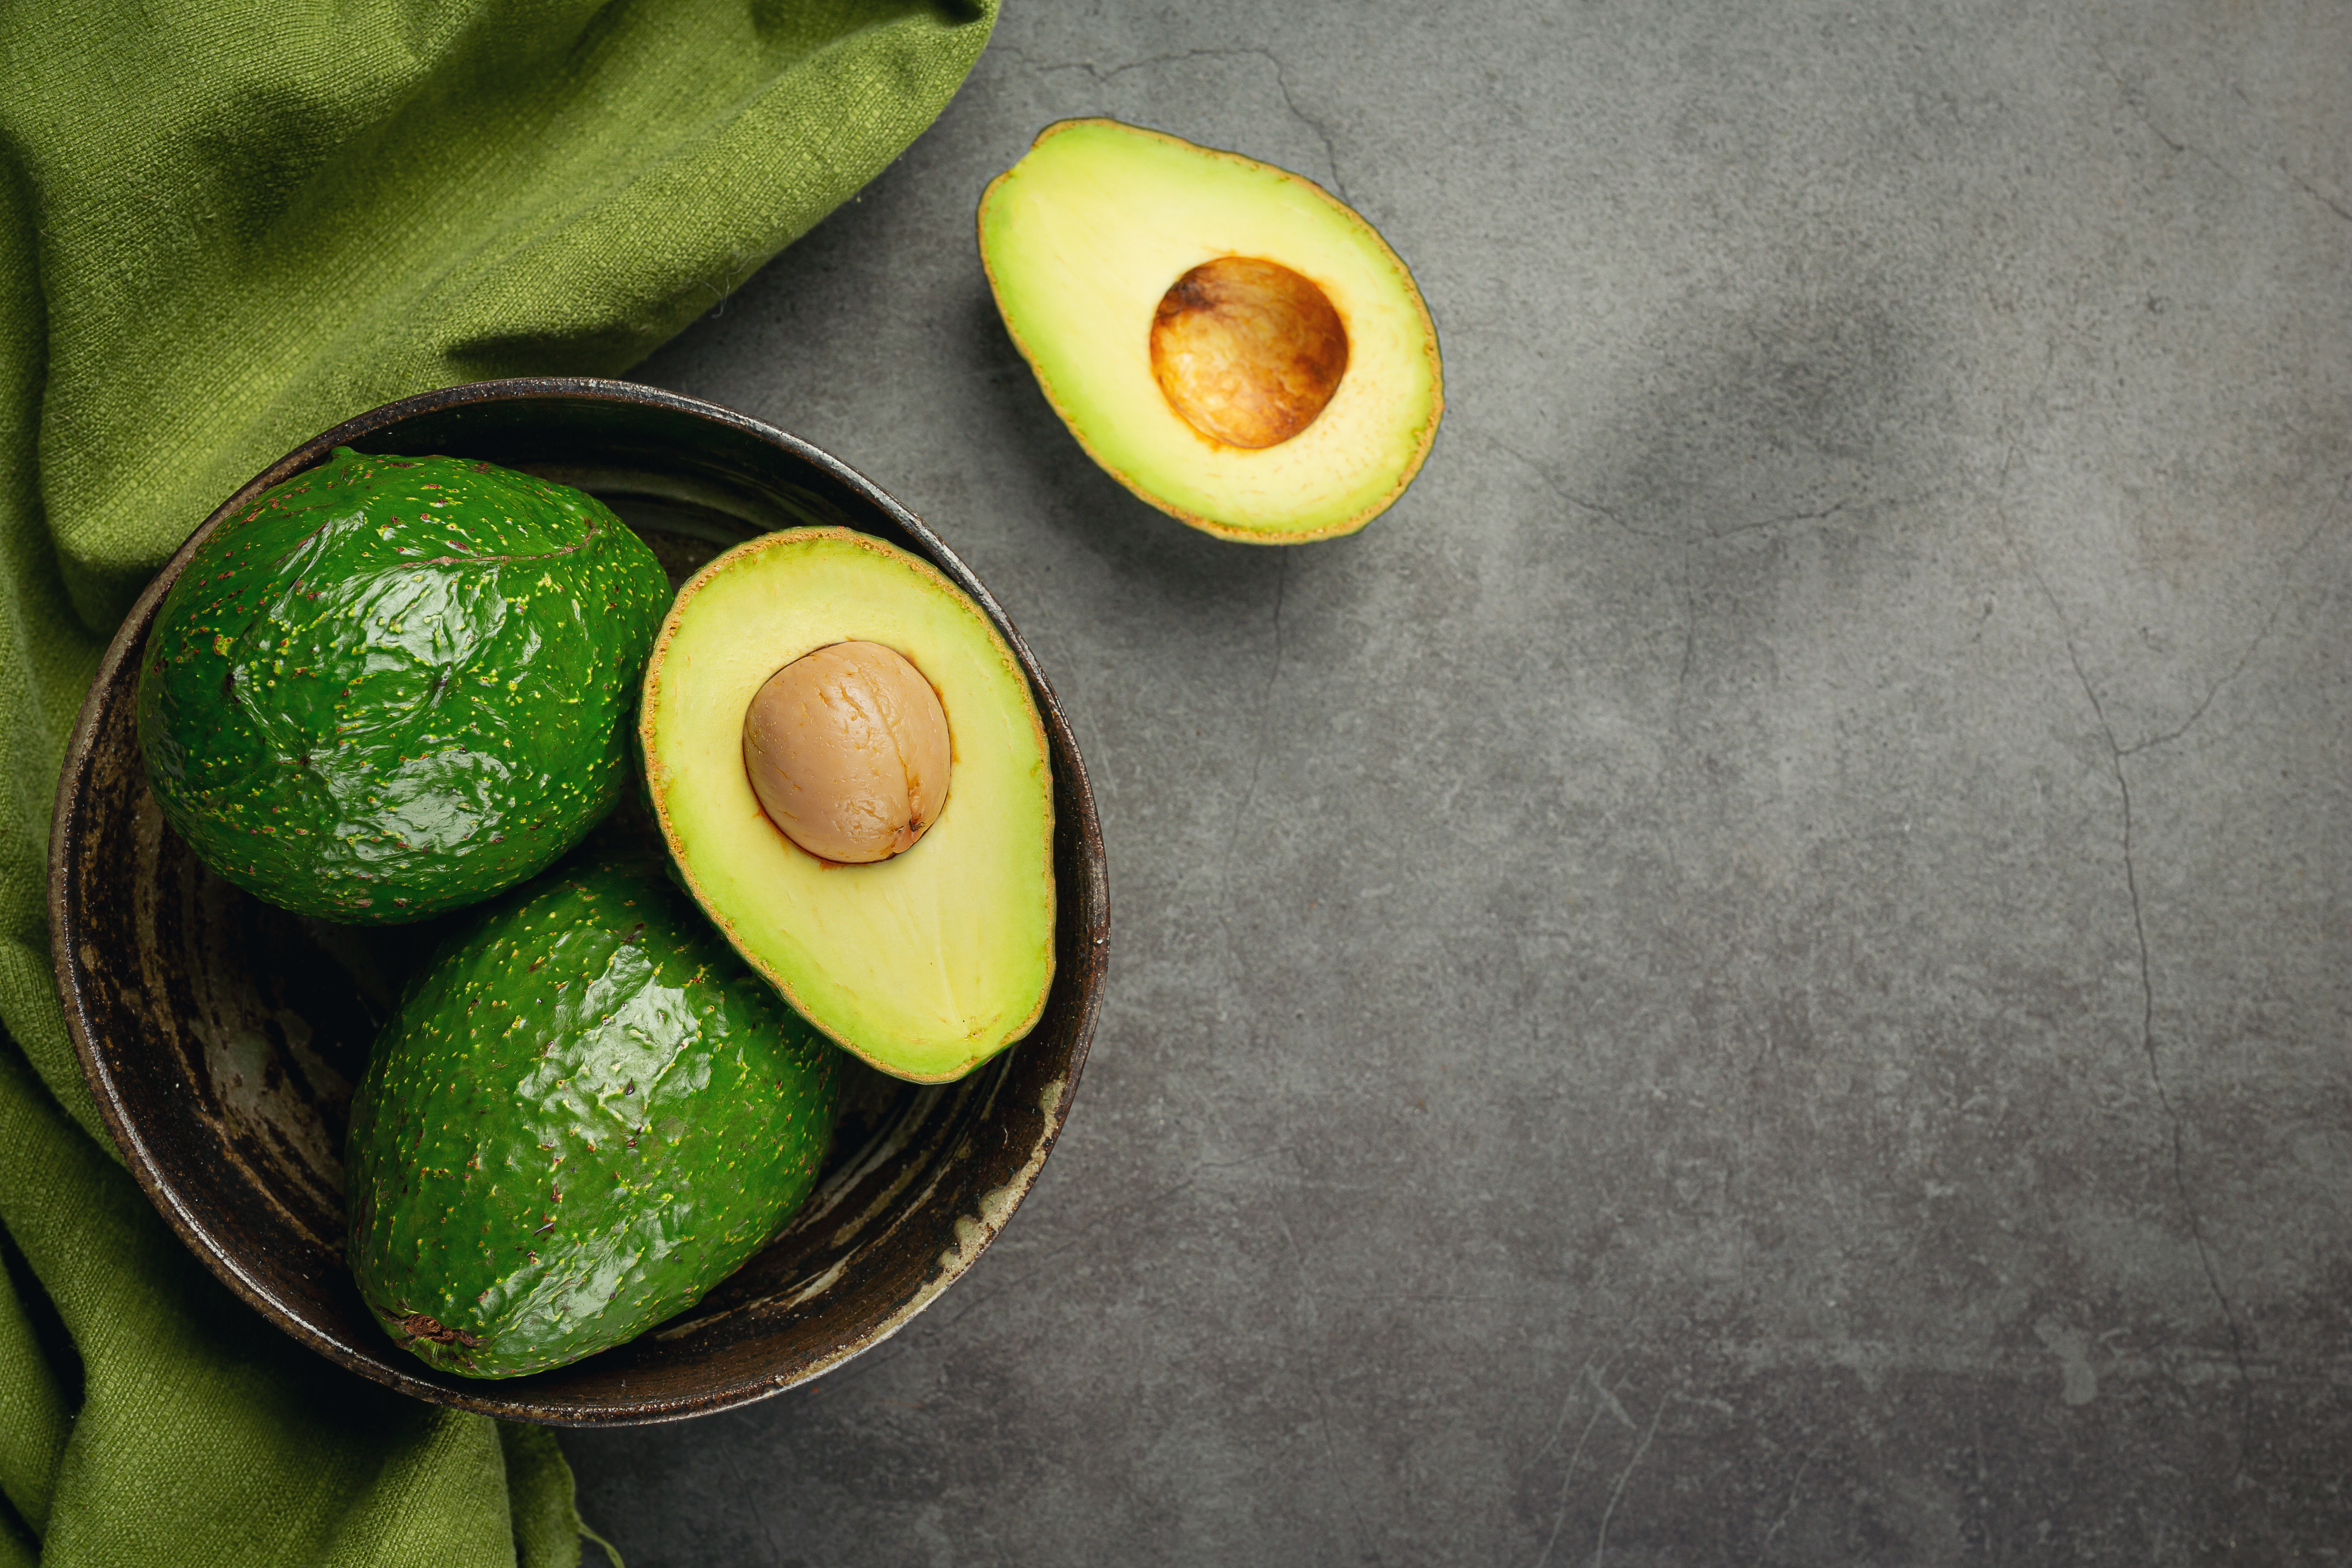 Comer um abacate por dia pode reduzir o colesterol, aponta estudo